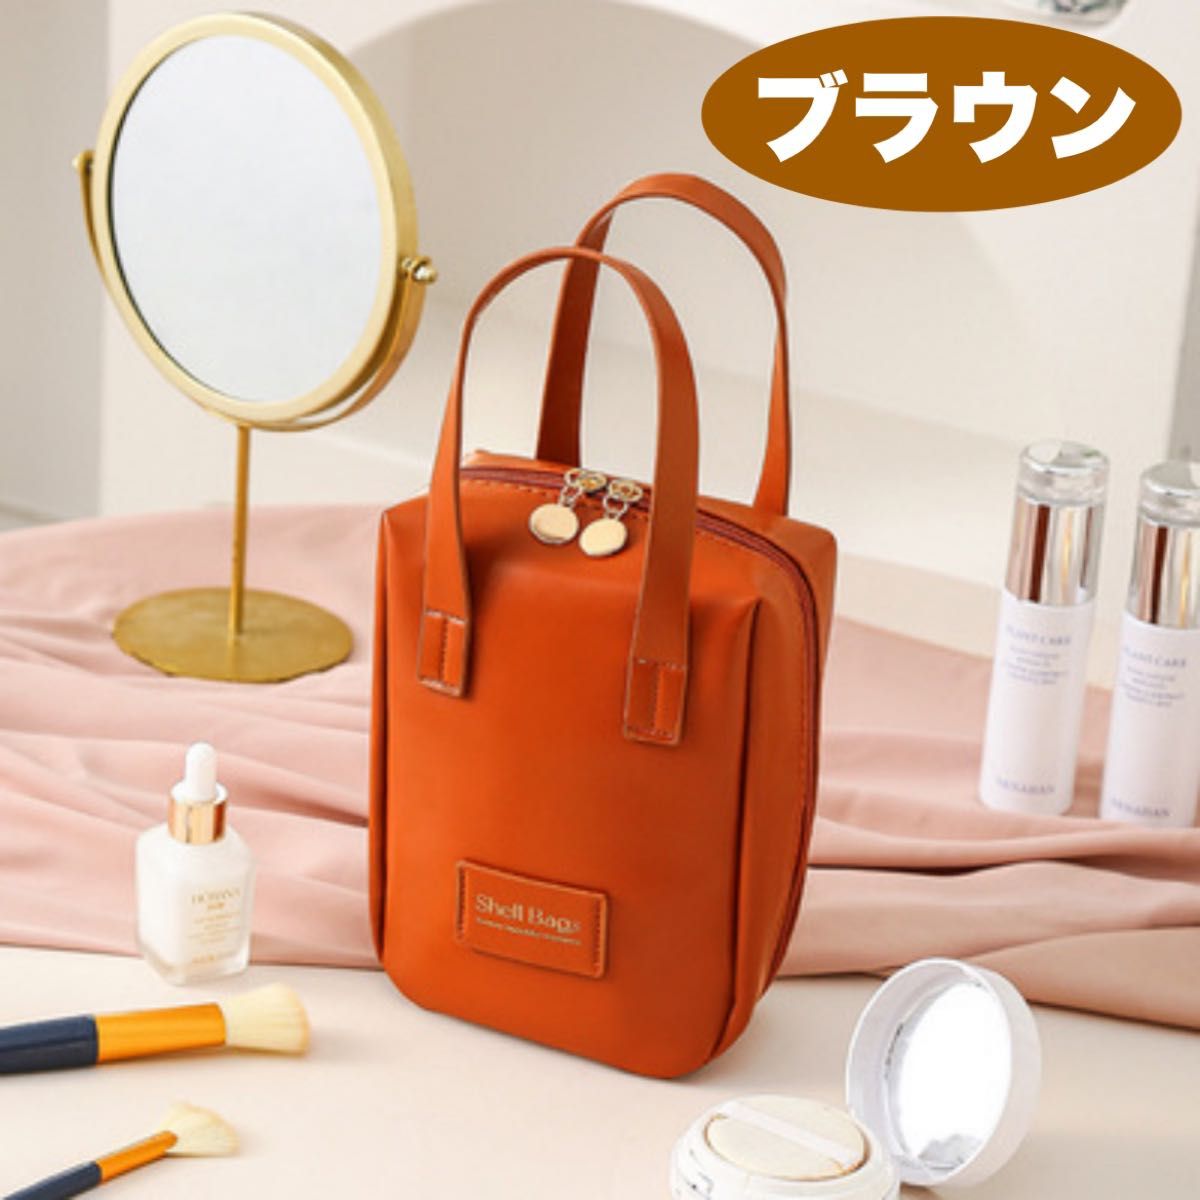  【1日限定価格】化粧ポーチ レディース 小物入れ 化粧品バッグ コンパクト 無地 シンプル 旅行